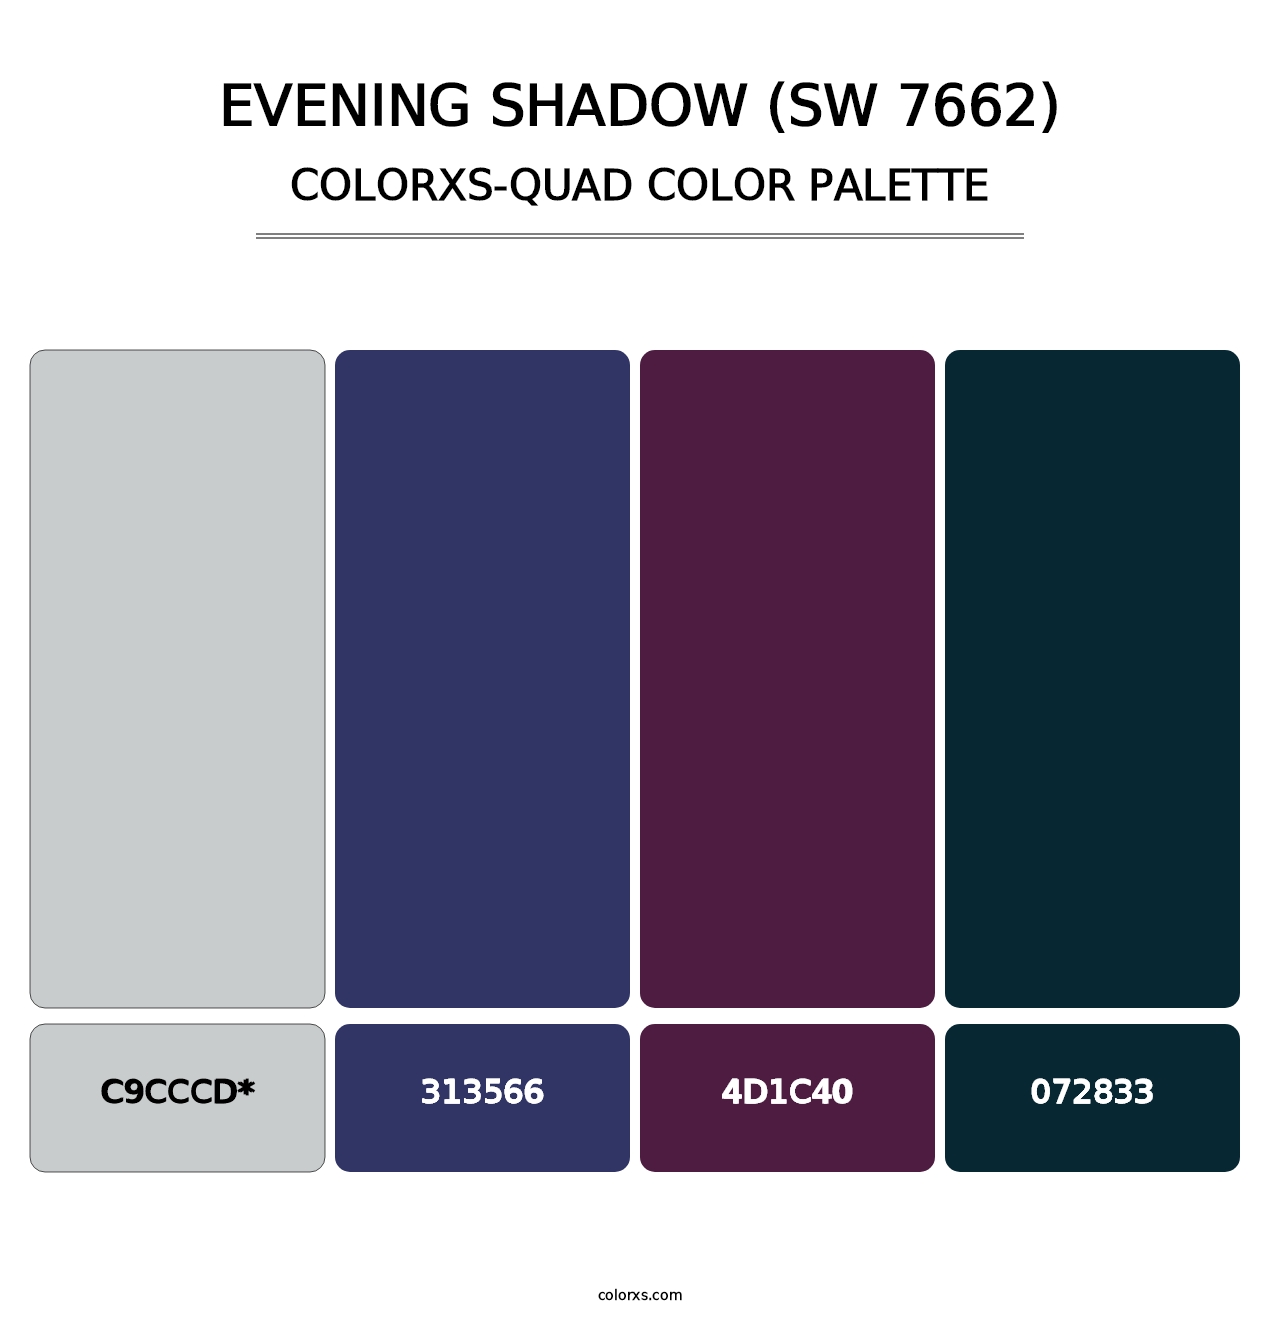 Evening Shadow (SW 7662) - Colorxs Quad Palette